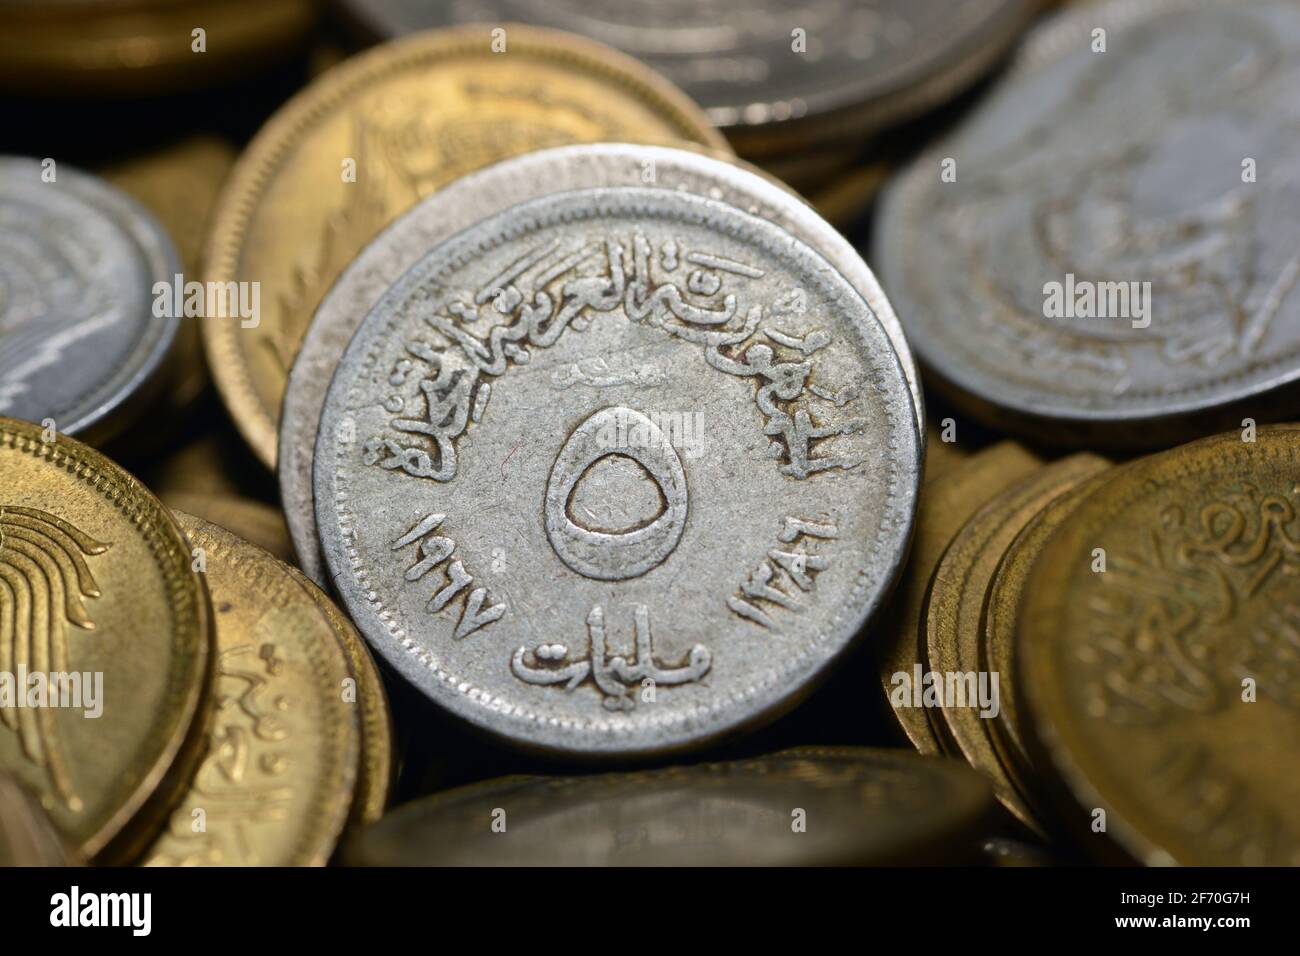 Cinco milliemes moneda 1967, antiguo dinero egipcio de 5 milliemes moneda la moneda de la República Árabe Unida de Egipto y Siria, vintage retro Foto de stock